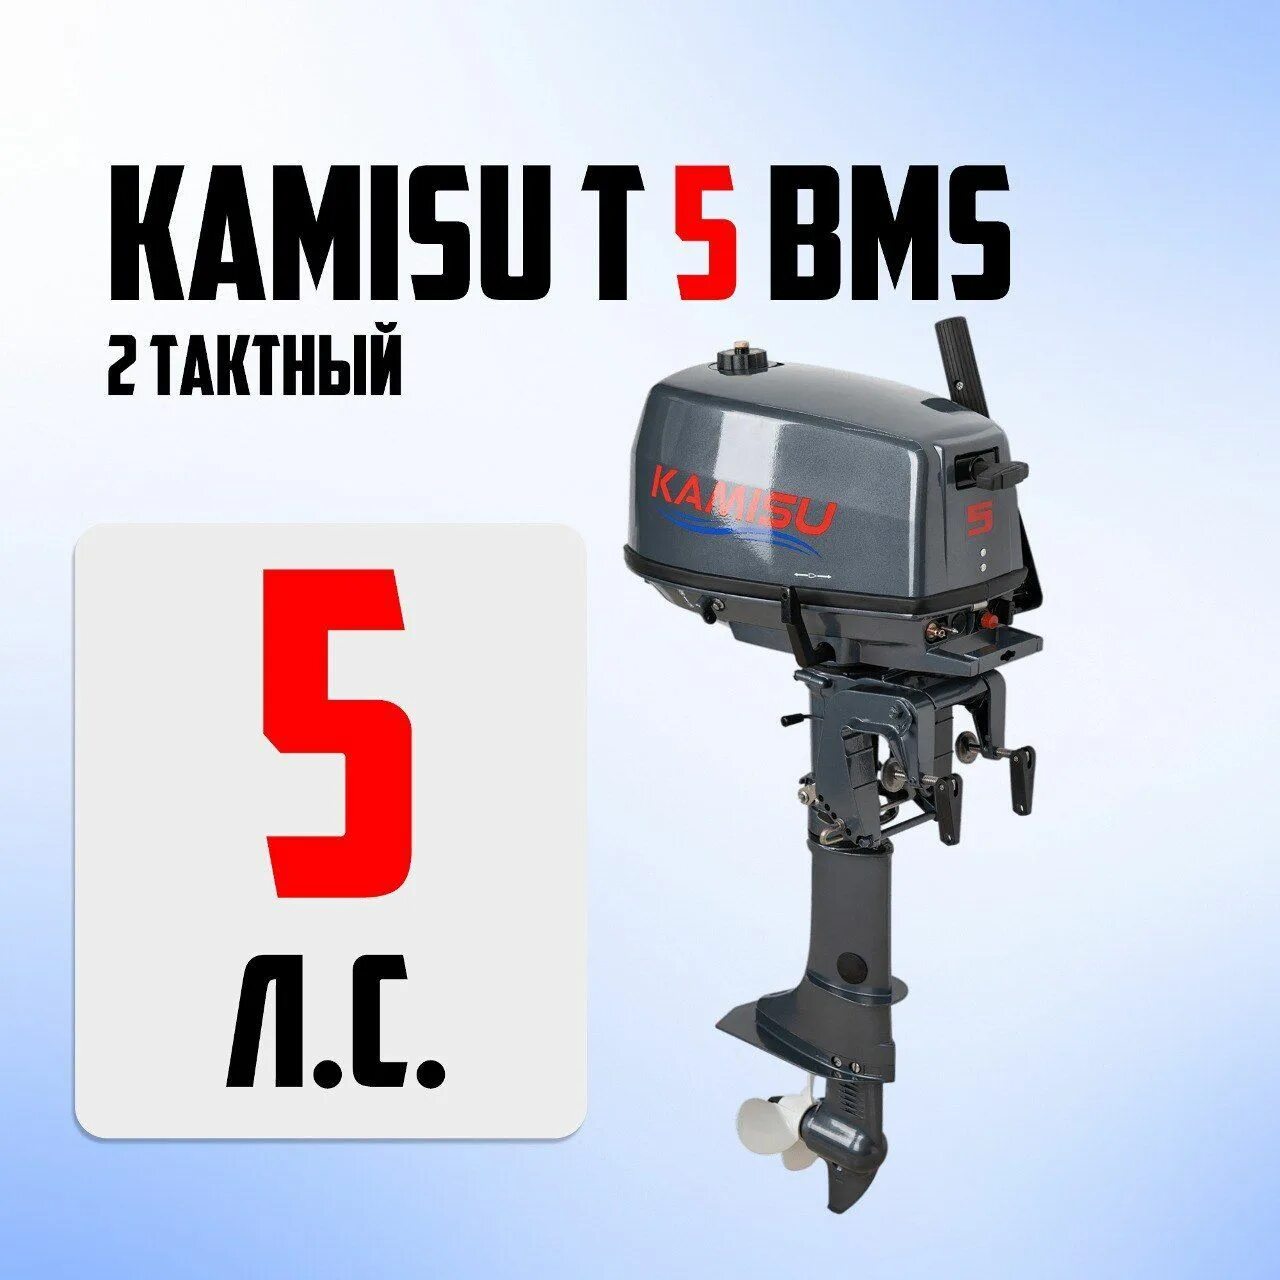 Kamisu лодочные моторы. Kamisu лодочные моторы производитель. Лодочный мотор 2-х тактный Jet! T2.6 BMS Silver. Лодочный мотор Kamisu f 5 BMS (4-Х тактный).